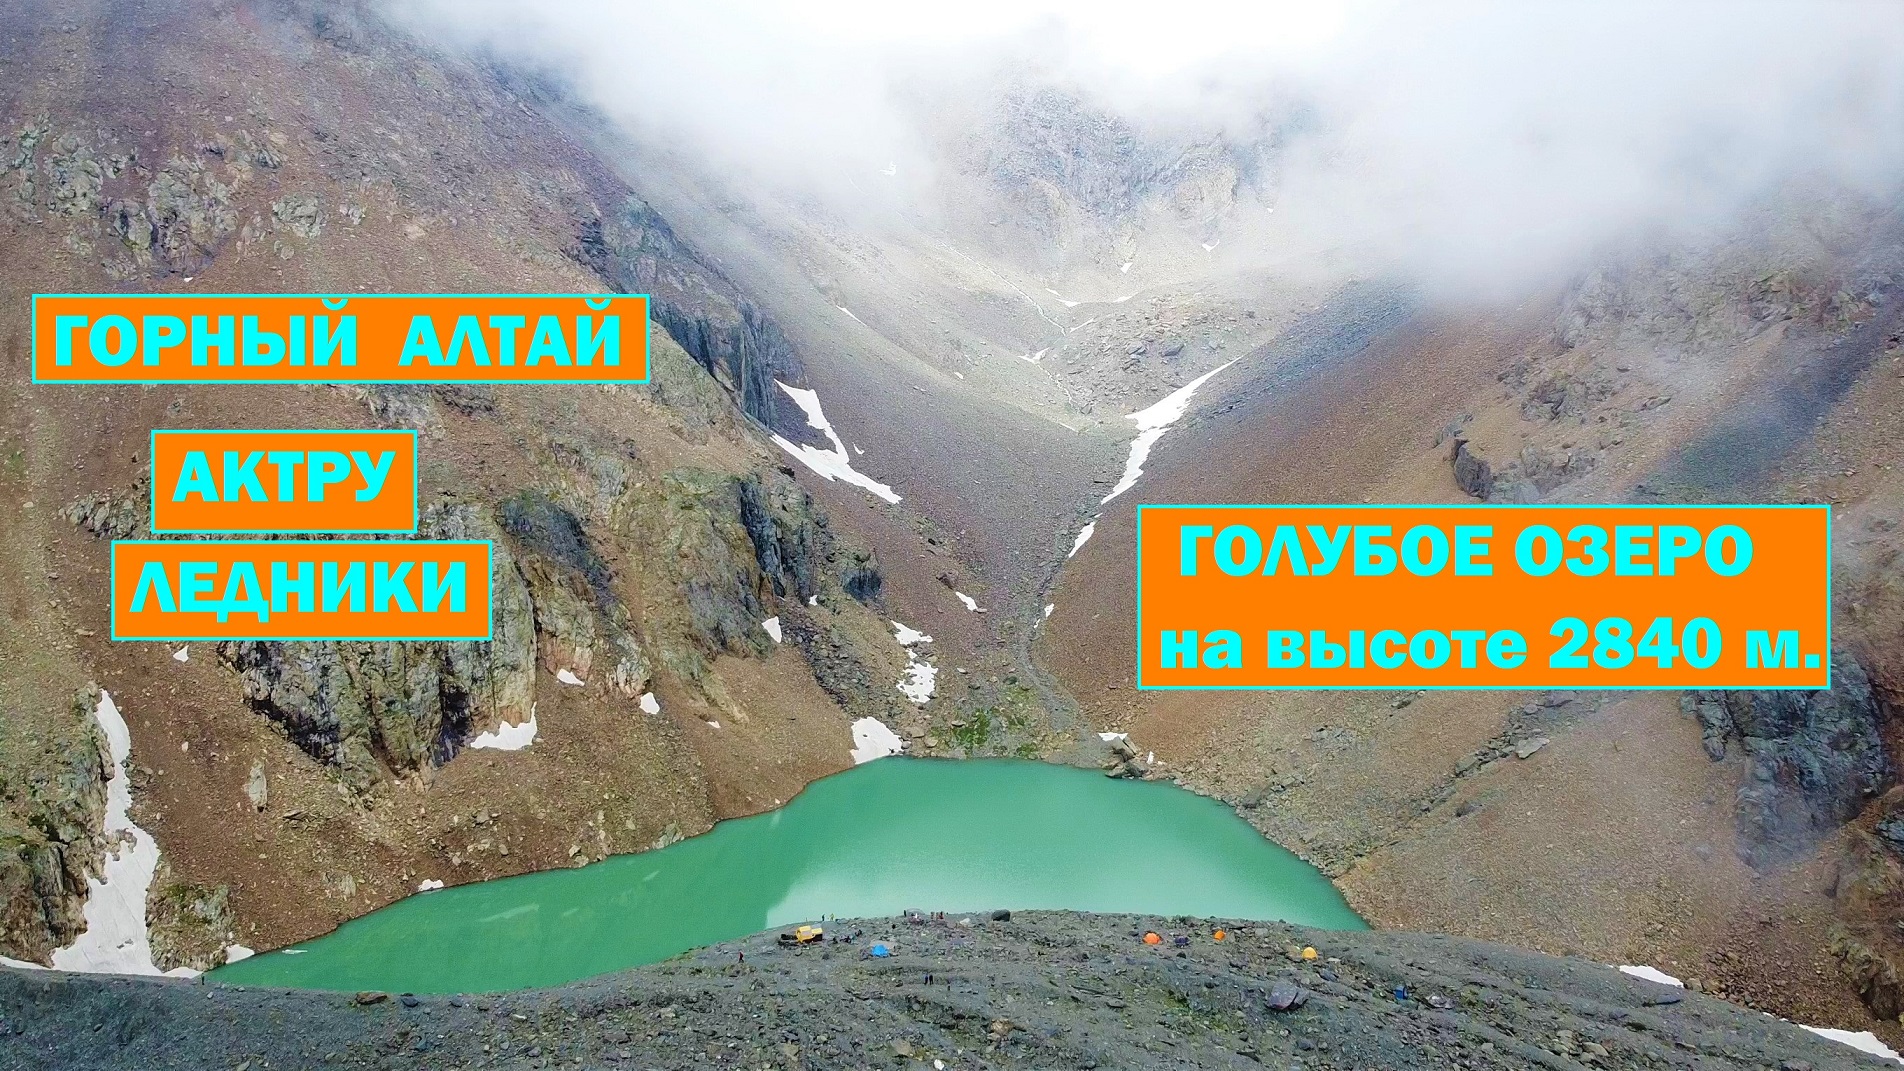 Горный Алтай 2021. Актру. Голубое озеро. Высота 2840 м. Альплагерь. Ледники. Видео с Mavic mini